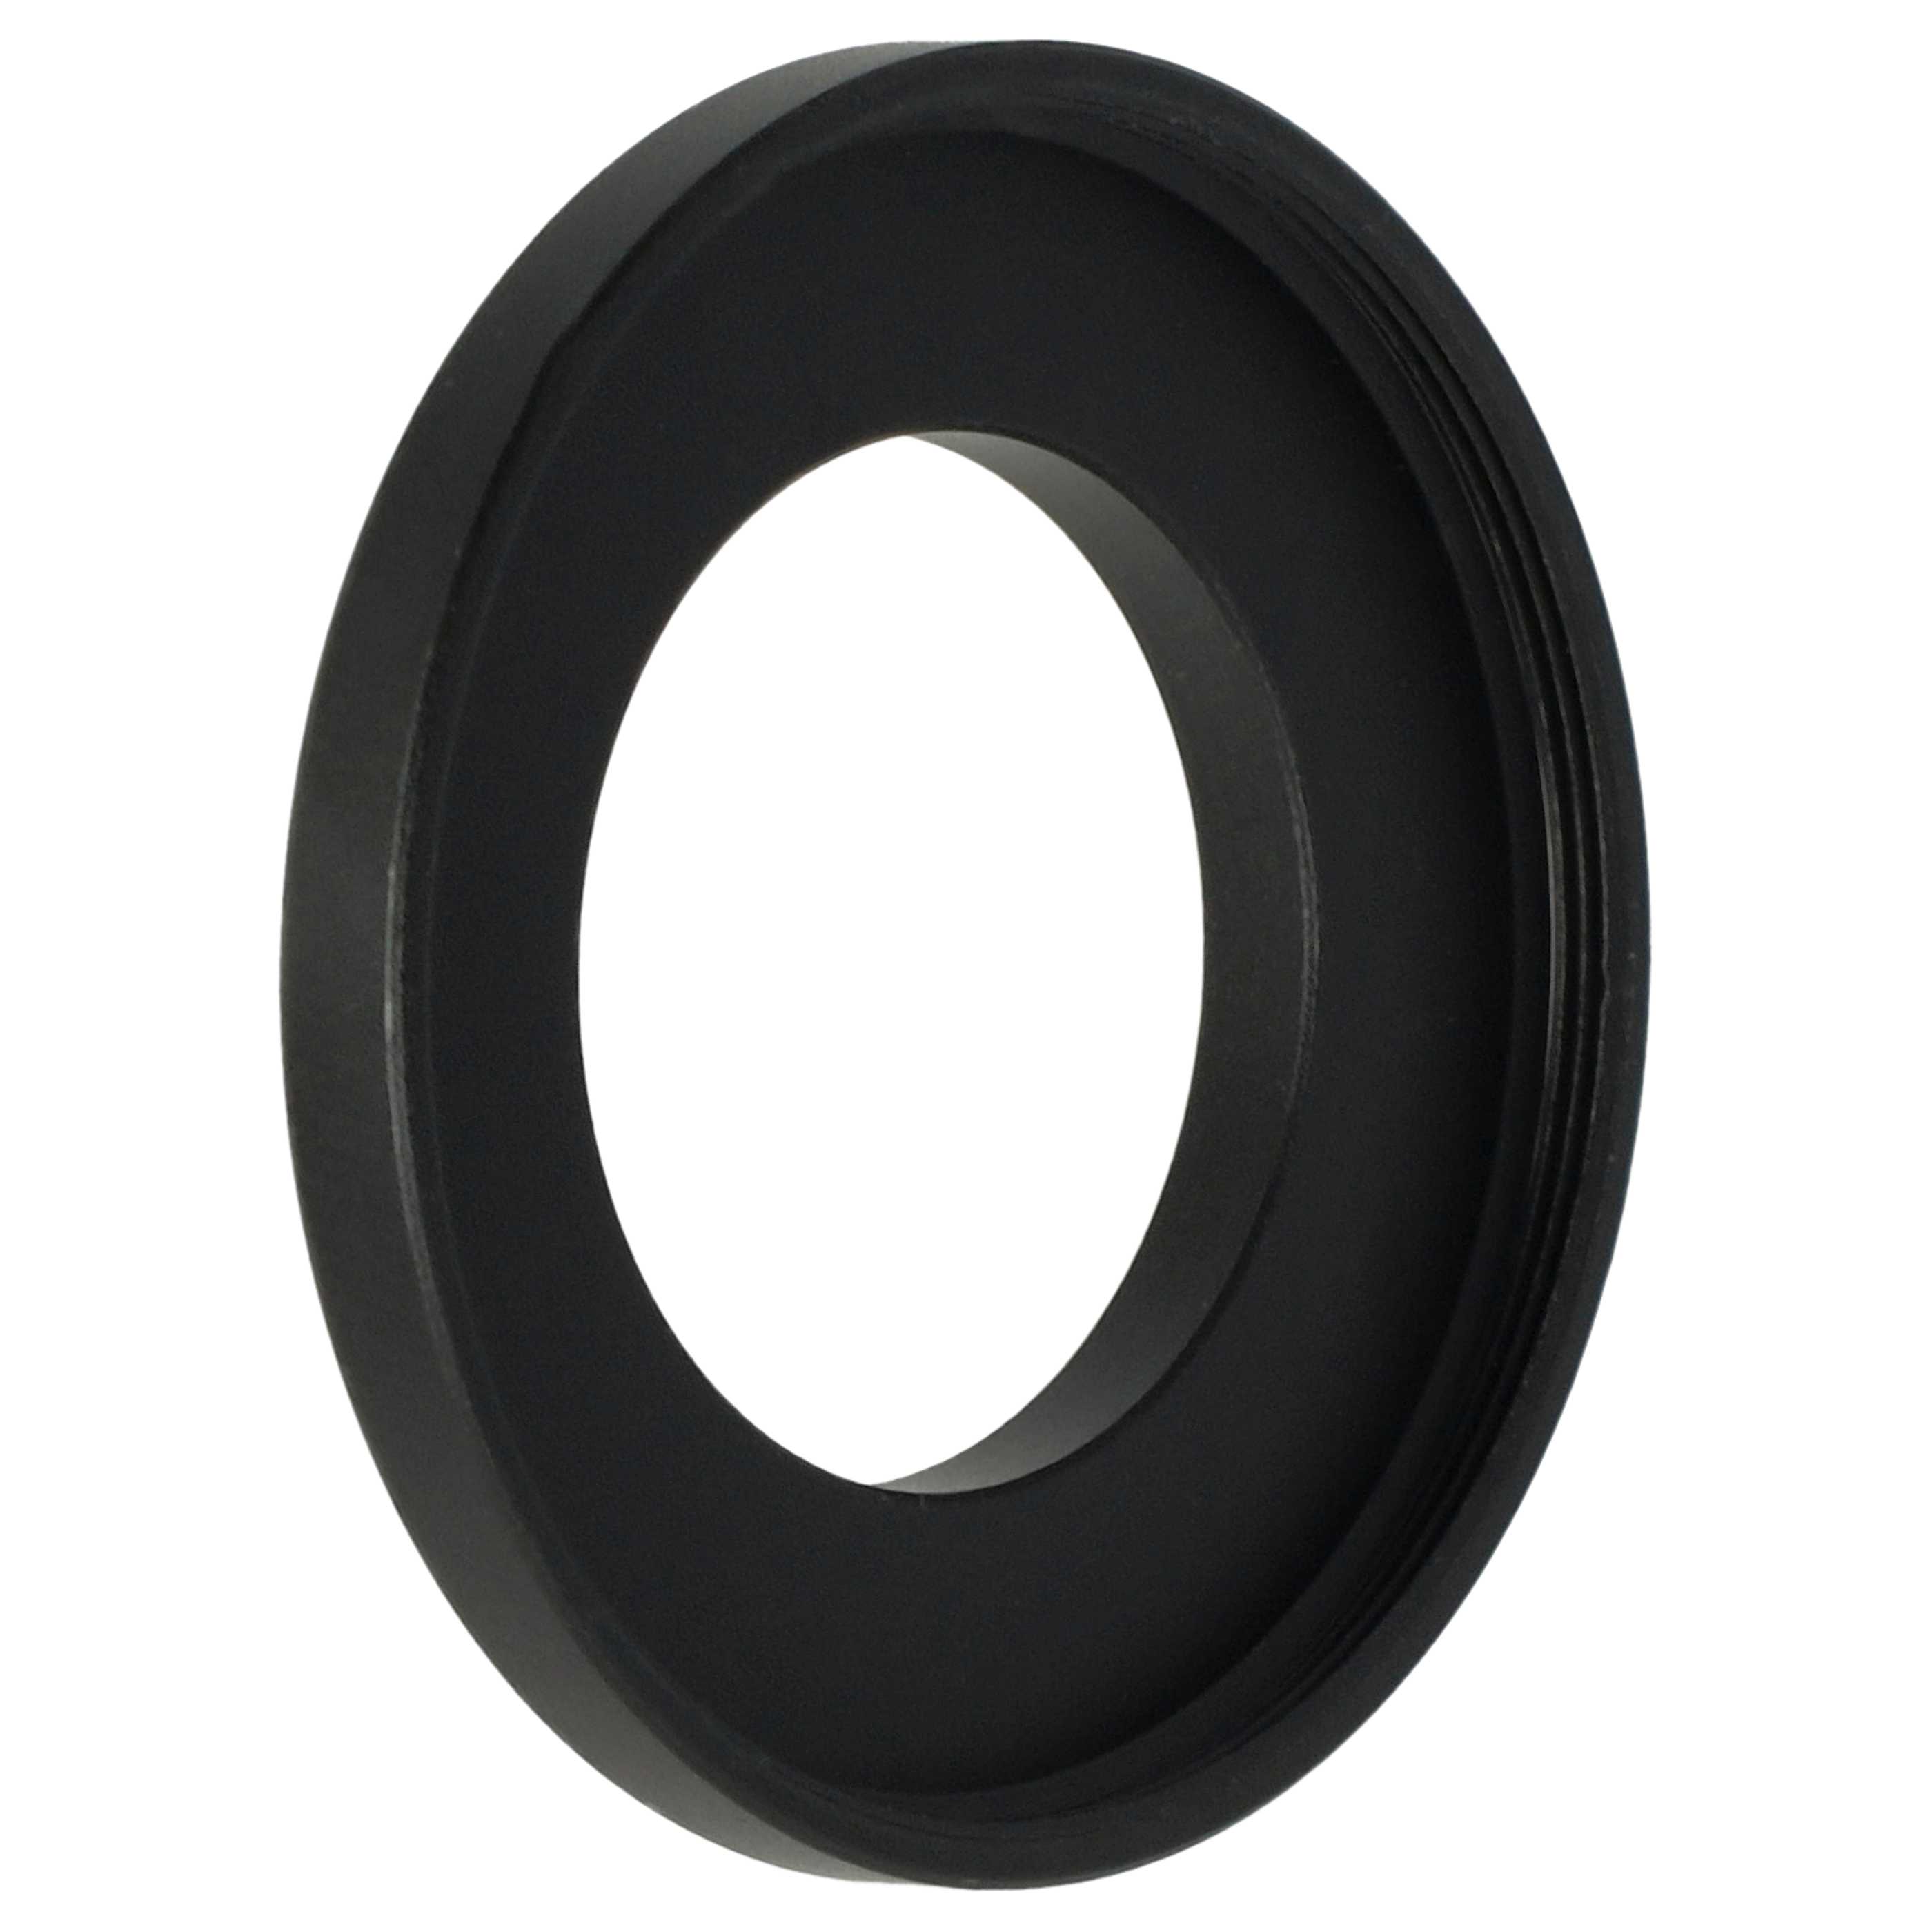 Step-Up-Ring Adapter 25 mm auf 37 mm passend für diverse Kamera-Objektive - Filteradapter